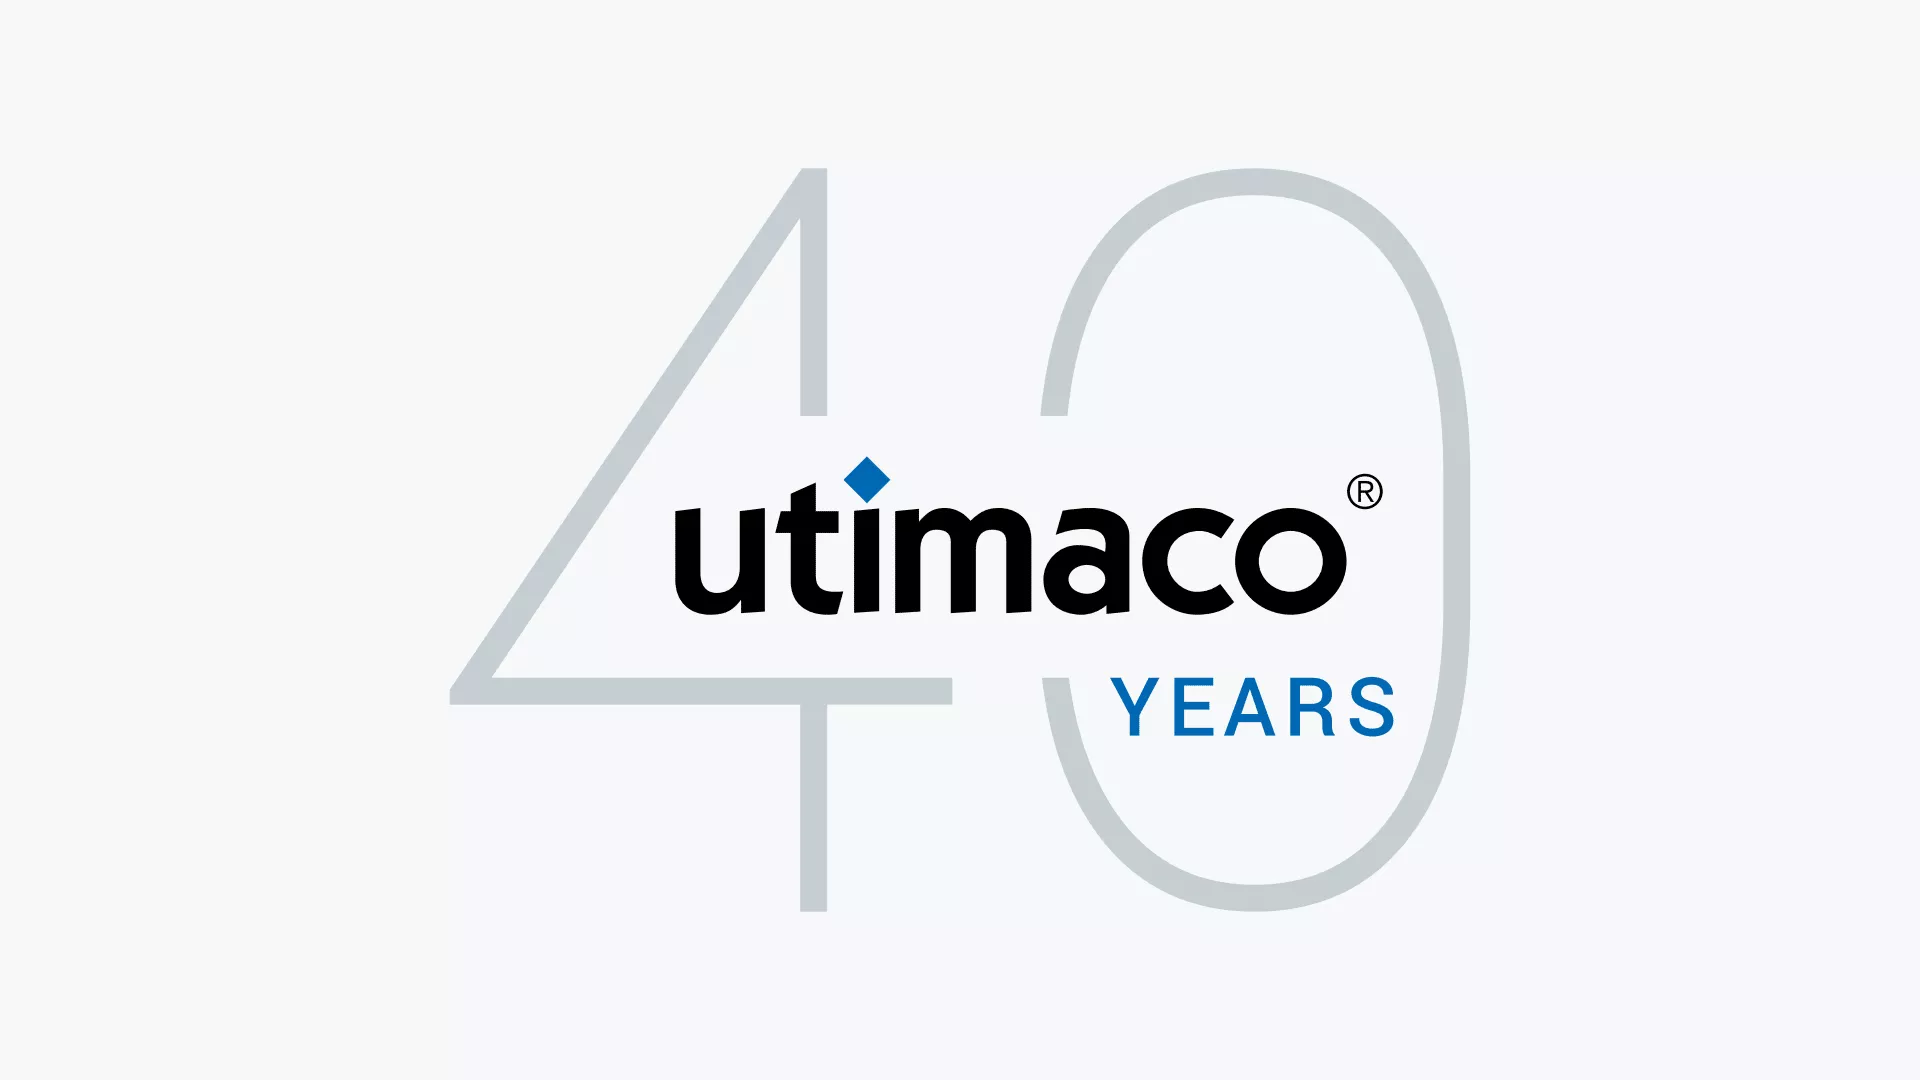 Utimaco 40 years Anniversary